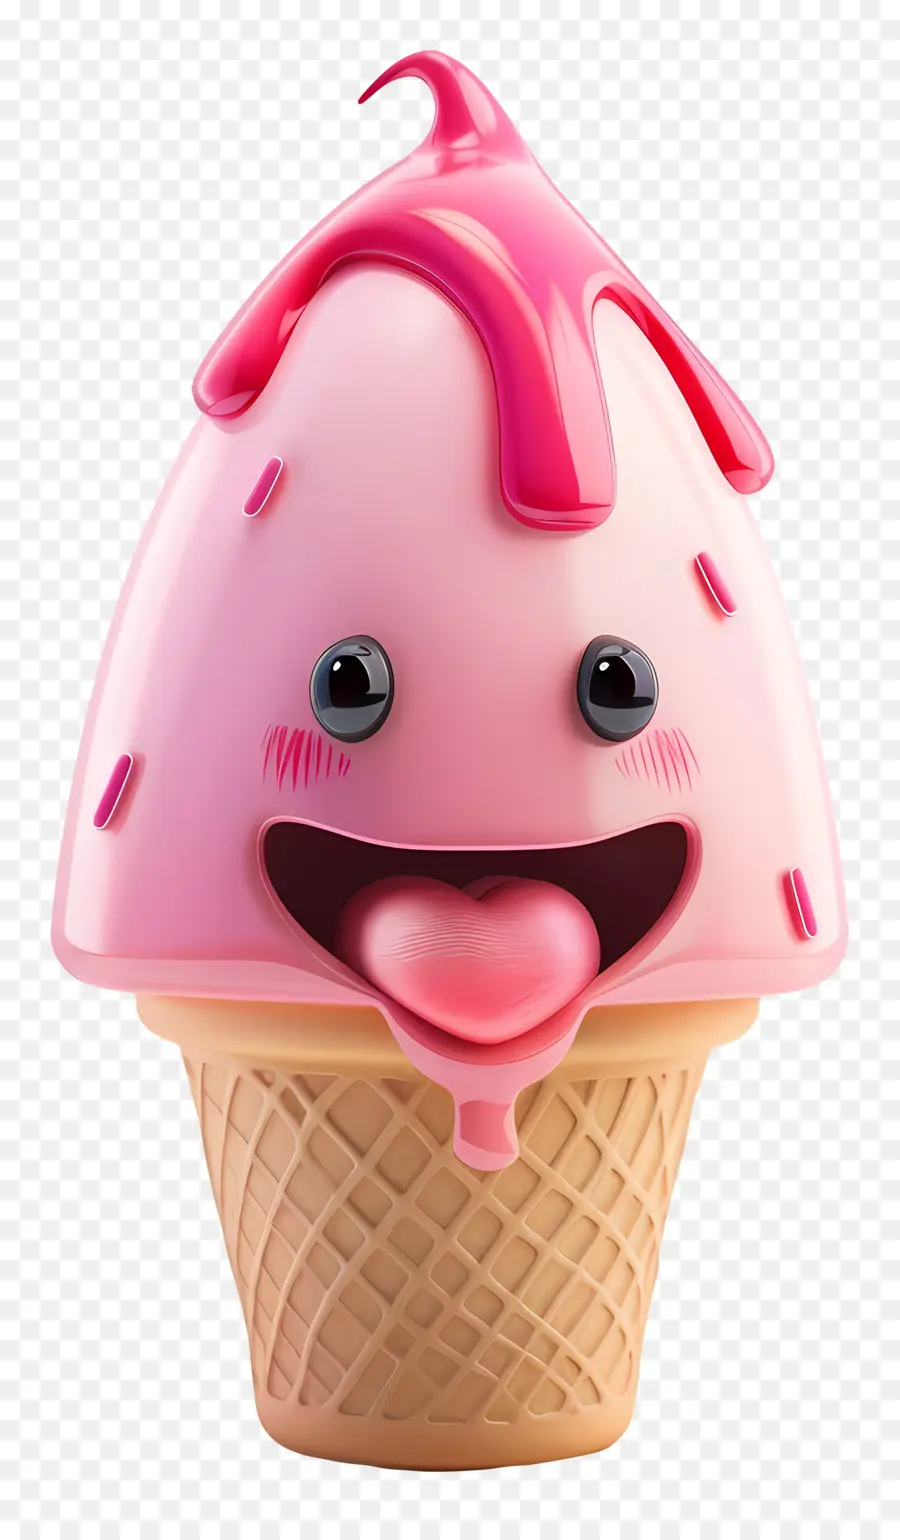 Dessert da cartone animato 3D cono gelato rosa conco montato di ciliegio dessert - Cono di gelato rosa con topping di ciliegia